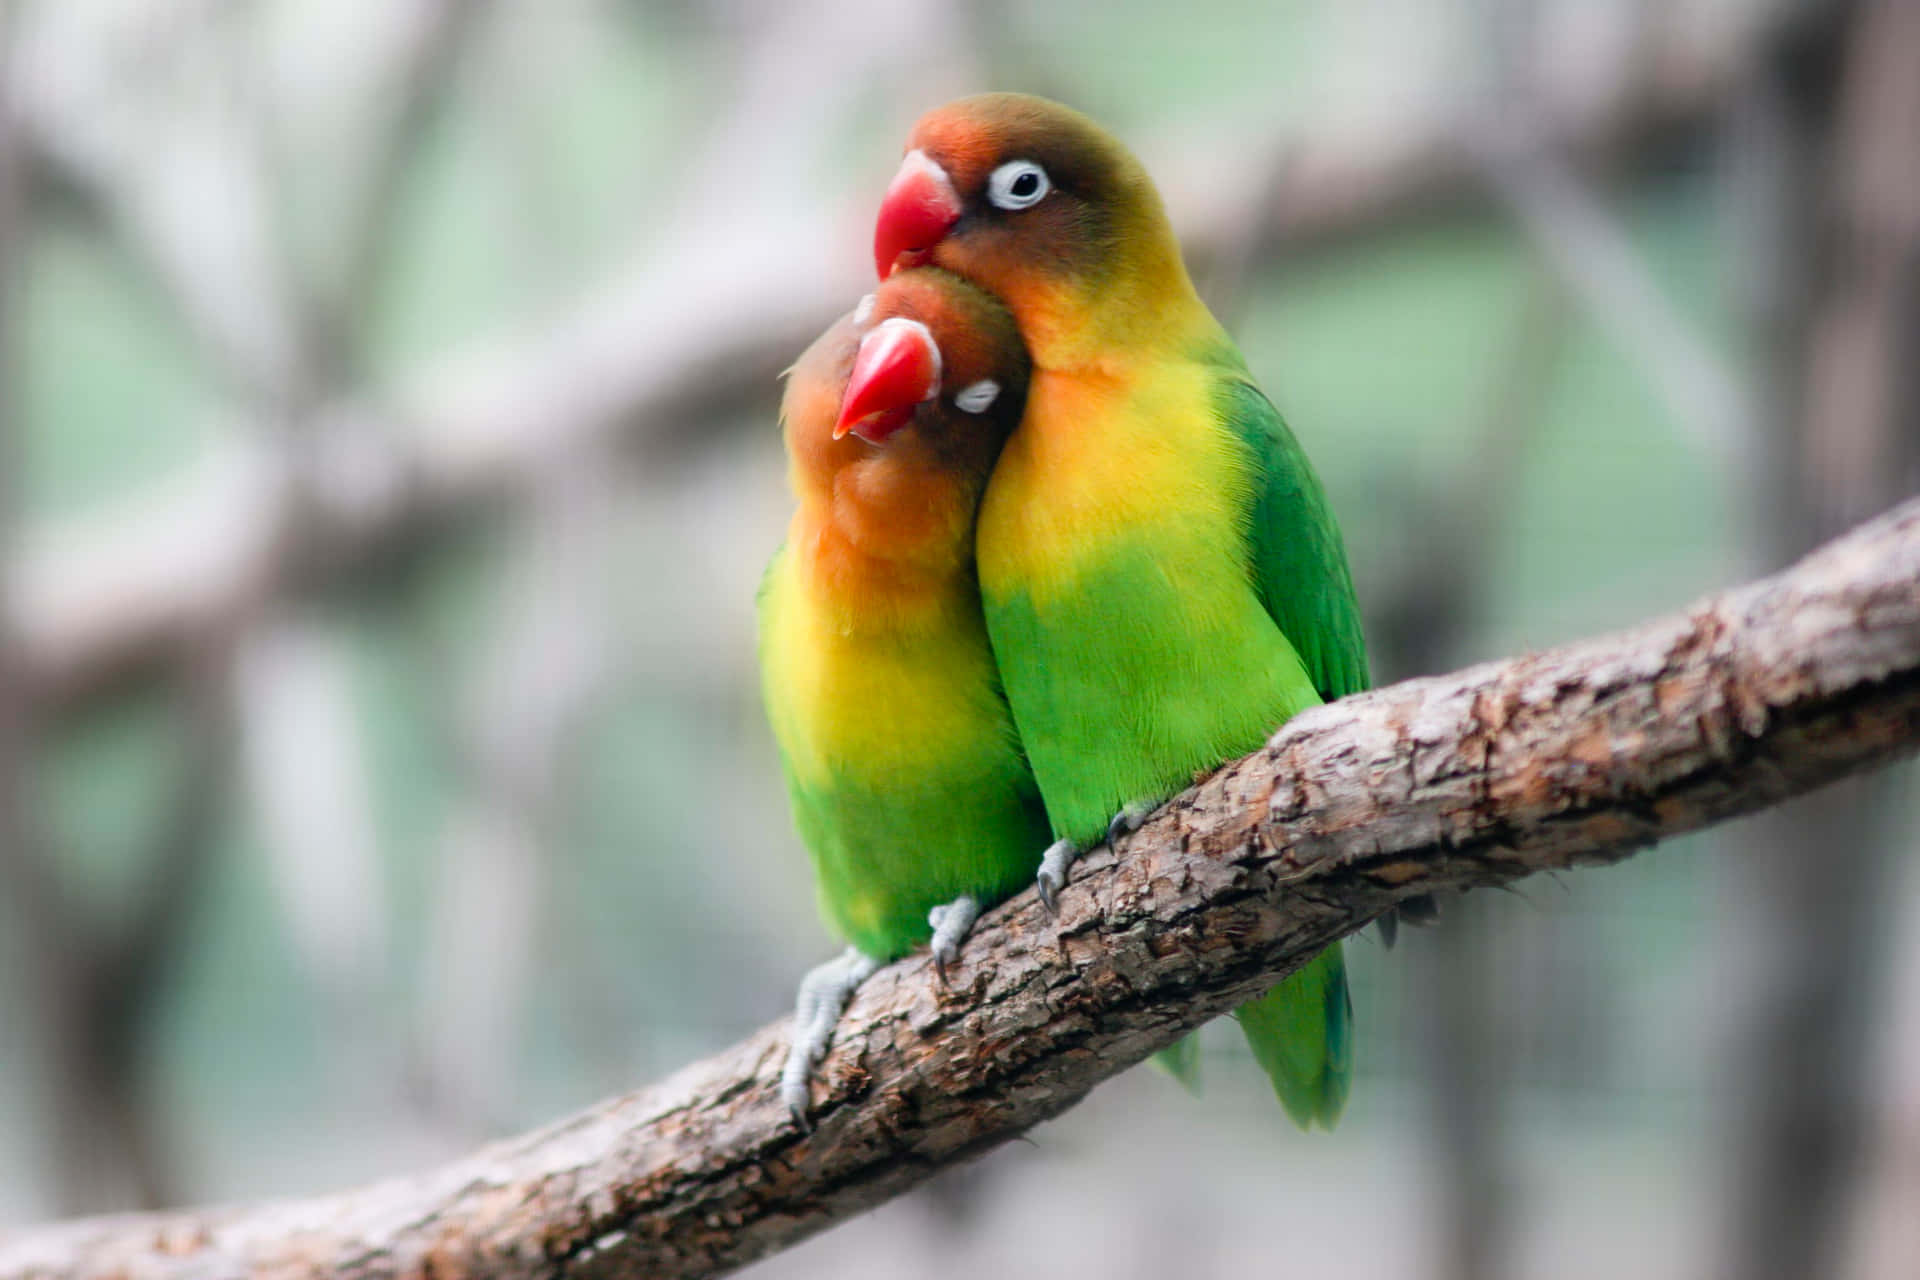 Einliebevoller Moment Zwischen Liebesvögeln.